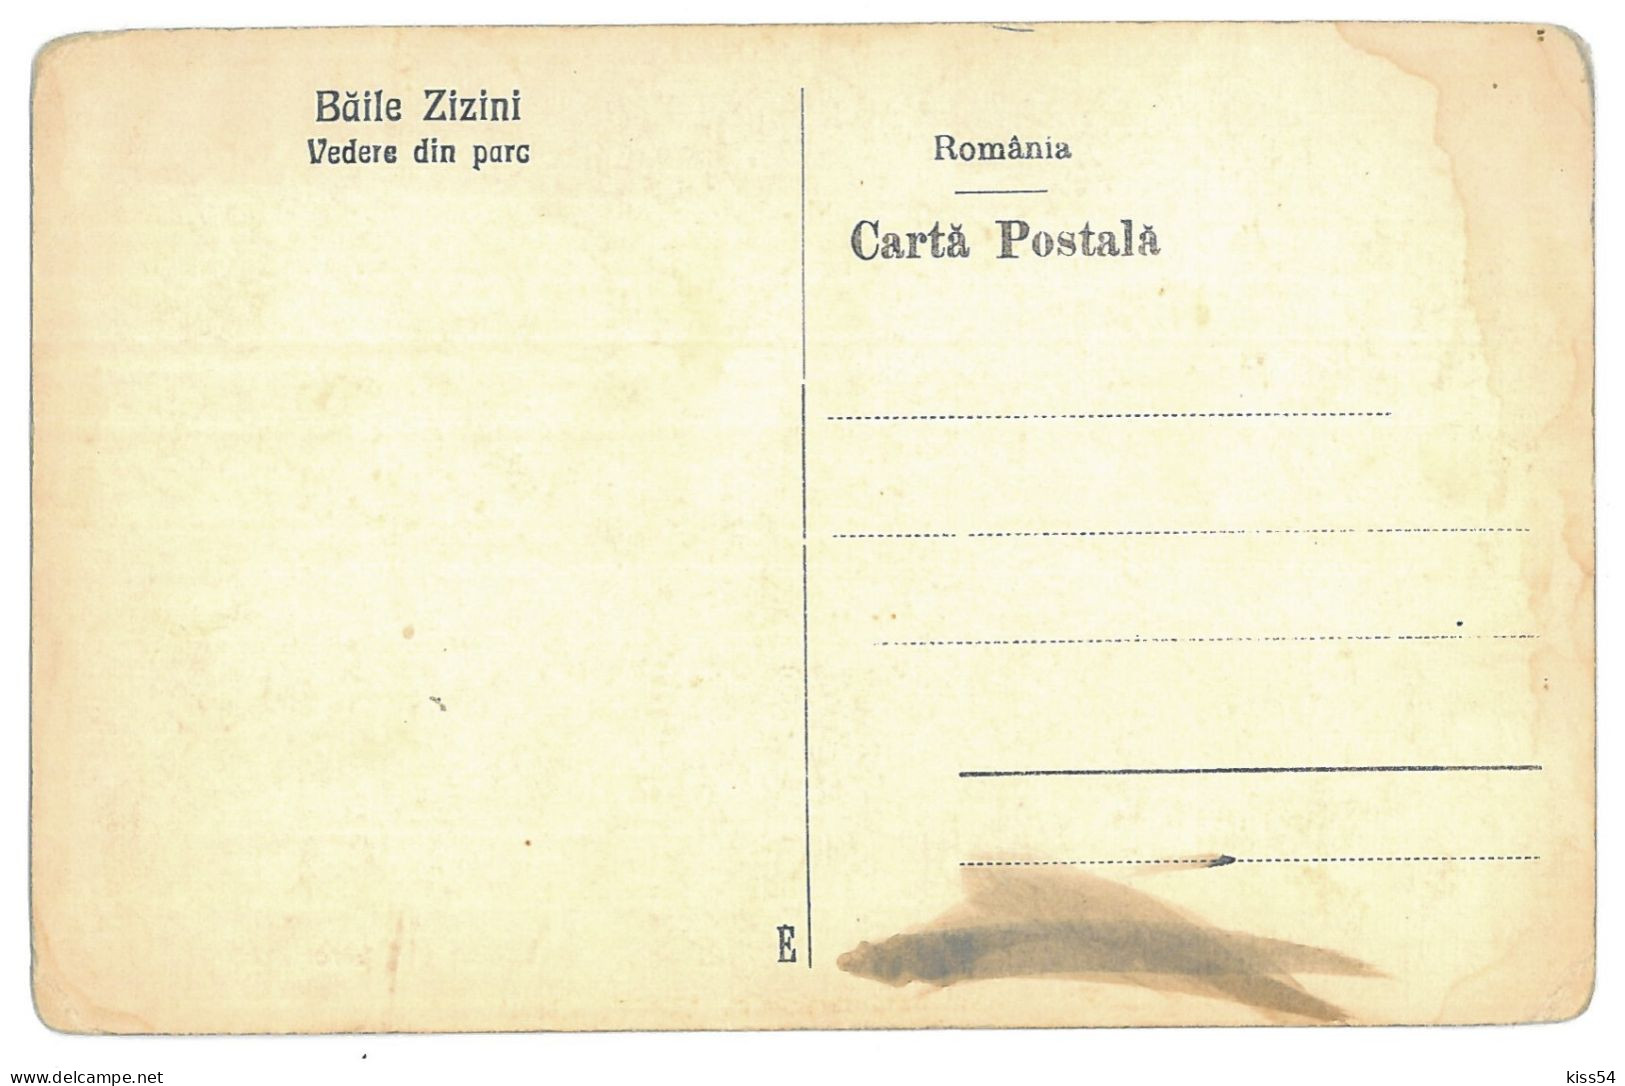 RO 91 - 13466 ZIZIN, Brasov, Park, Romania - Old Postcard - Unused - Roemenië